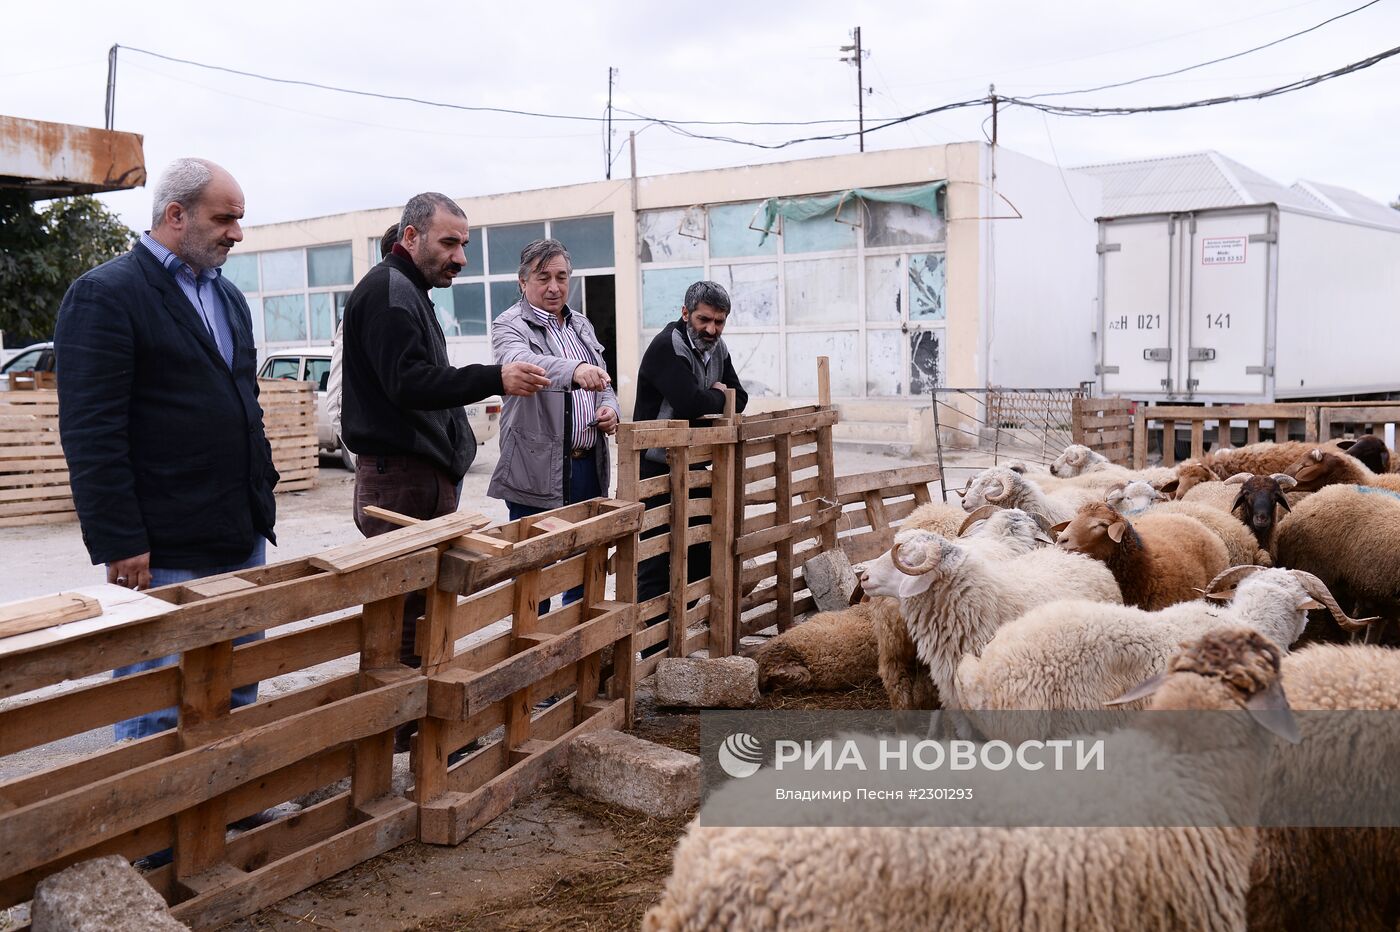 Подготовка к празднованию Курбан-байрама в Азербайджане